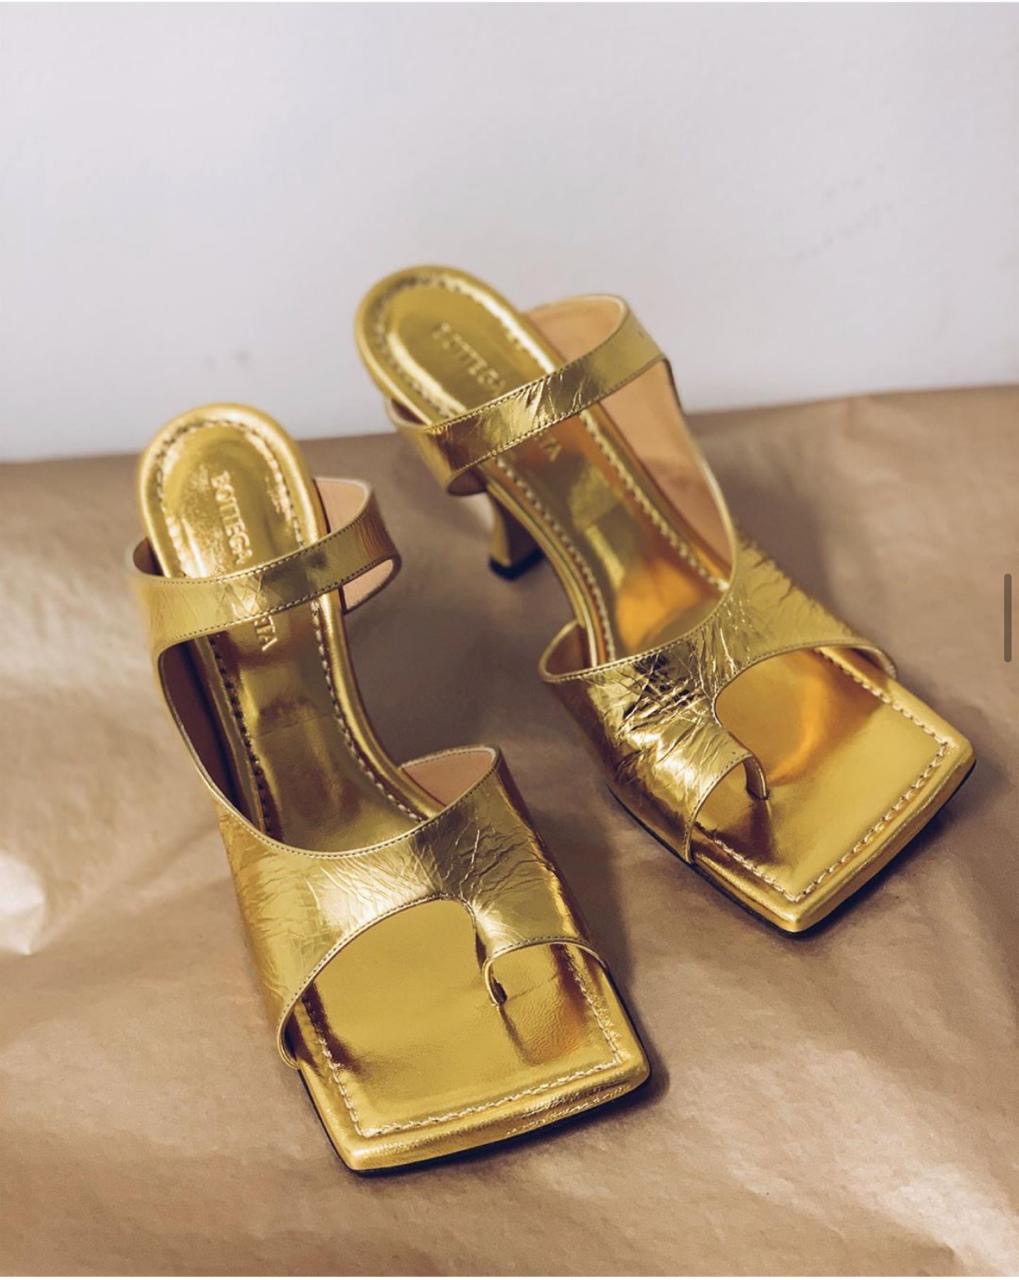 Bottega Veneta Sandals Price List - Brands Blogger